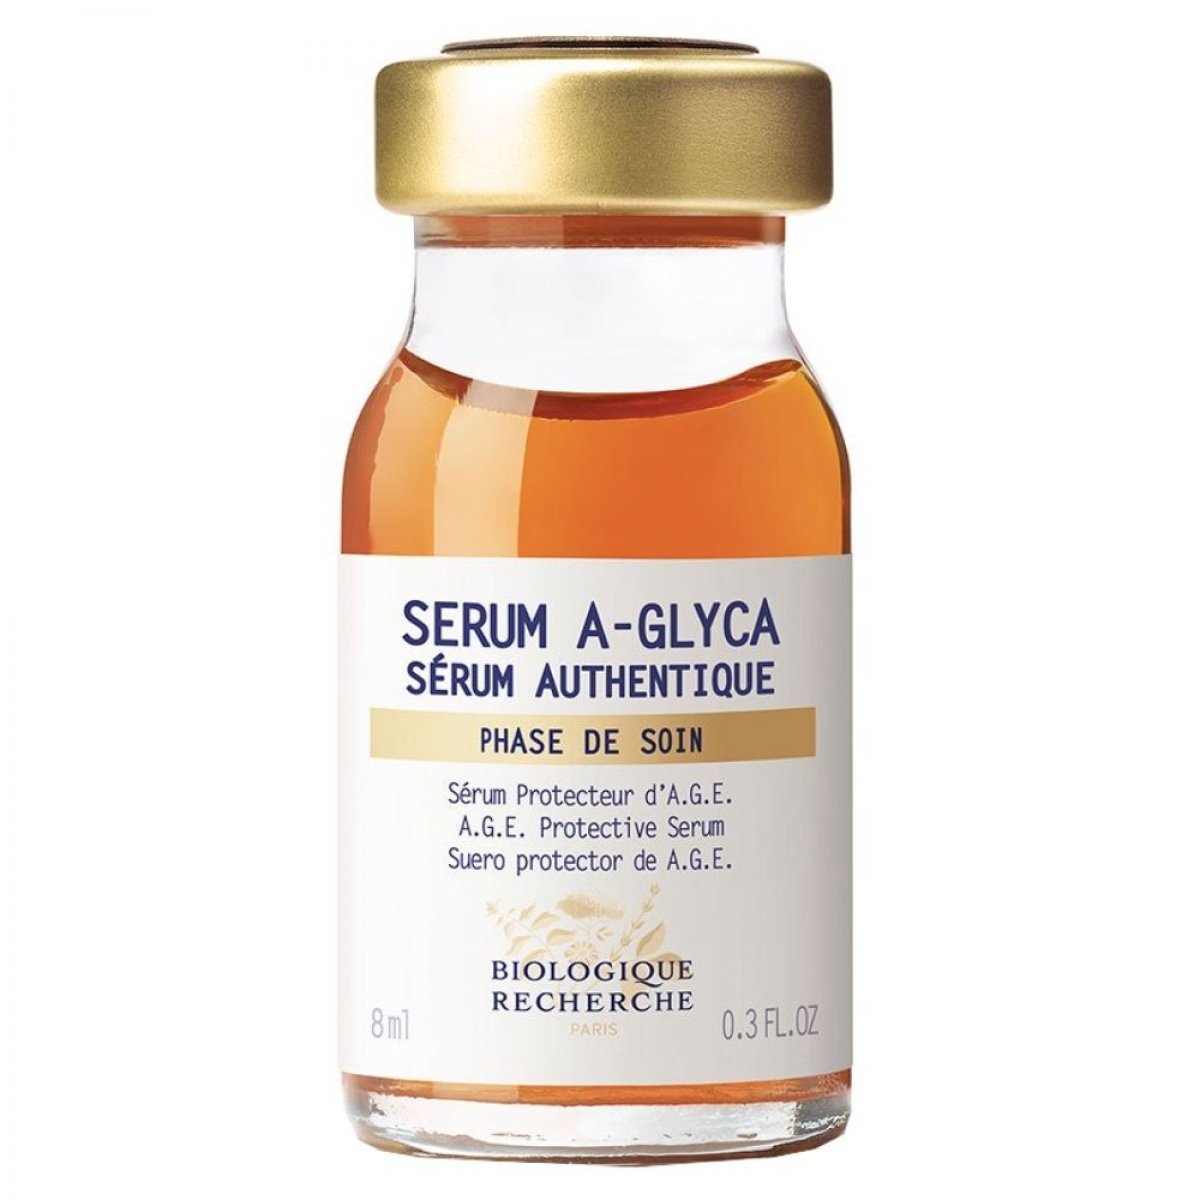 Сыворотка против старения кожи Serum A-Glyca Biologique Recherche, 8мл